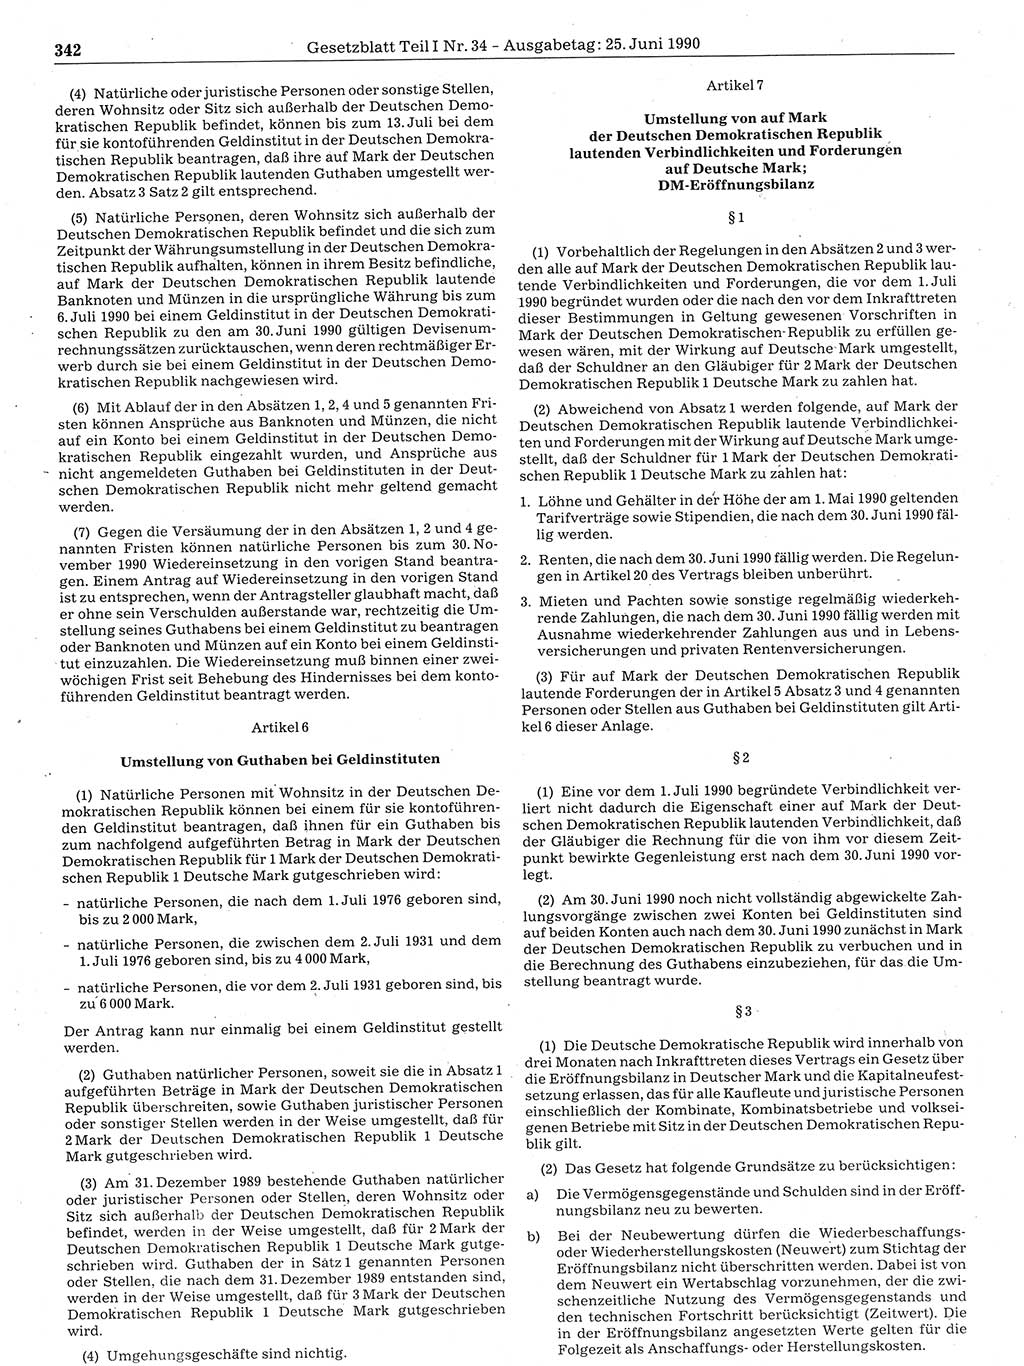 Gesetzblatt (GBl.) der Deutschen Demokratischen Republik (DDR) Teil Ⅰ 1990, Seite 342 (GBl. DDR Ⅰ 1990, S. 342)